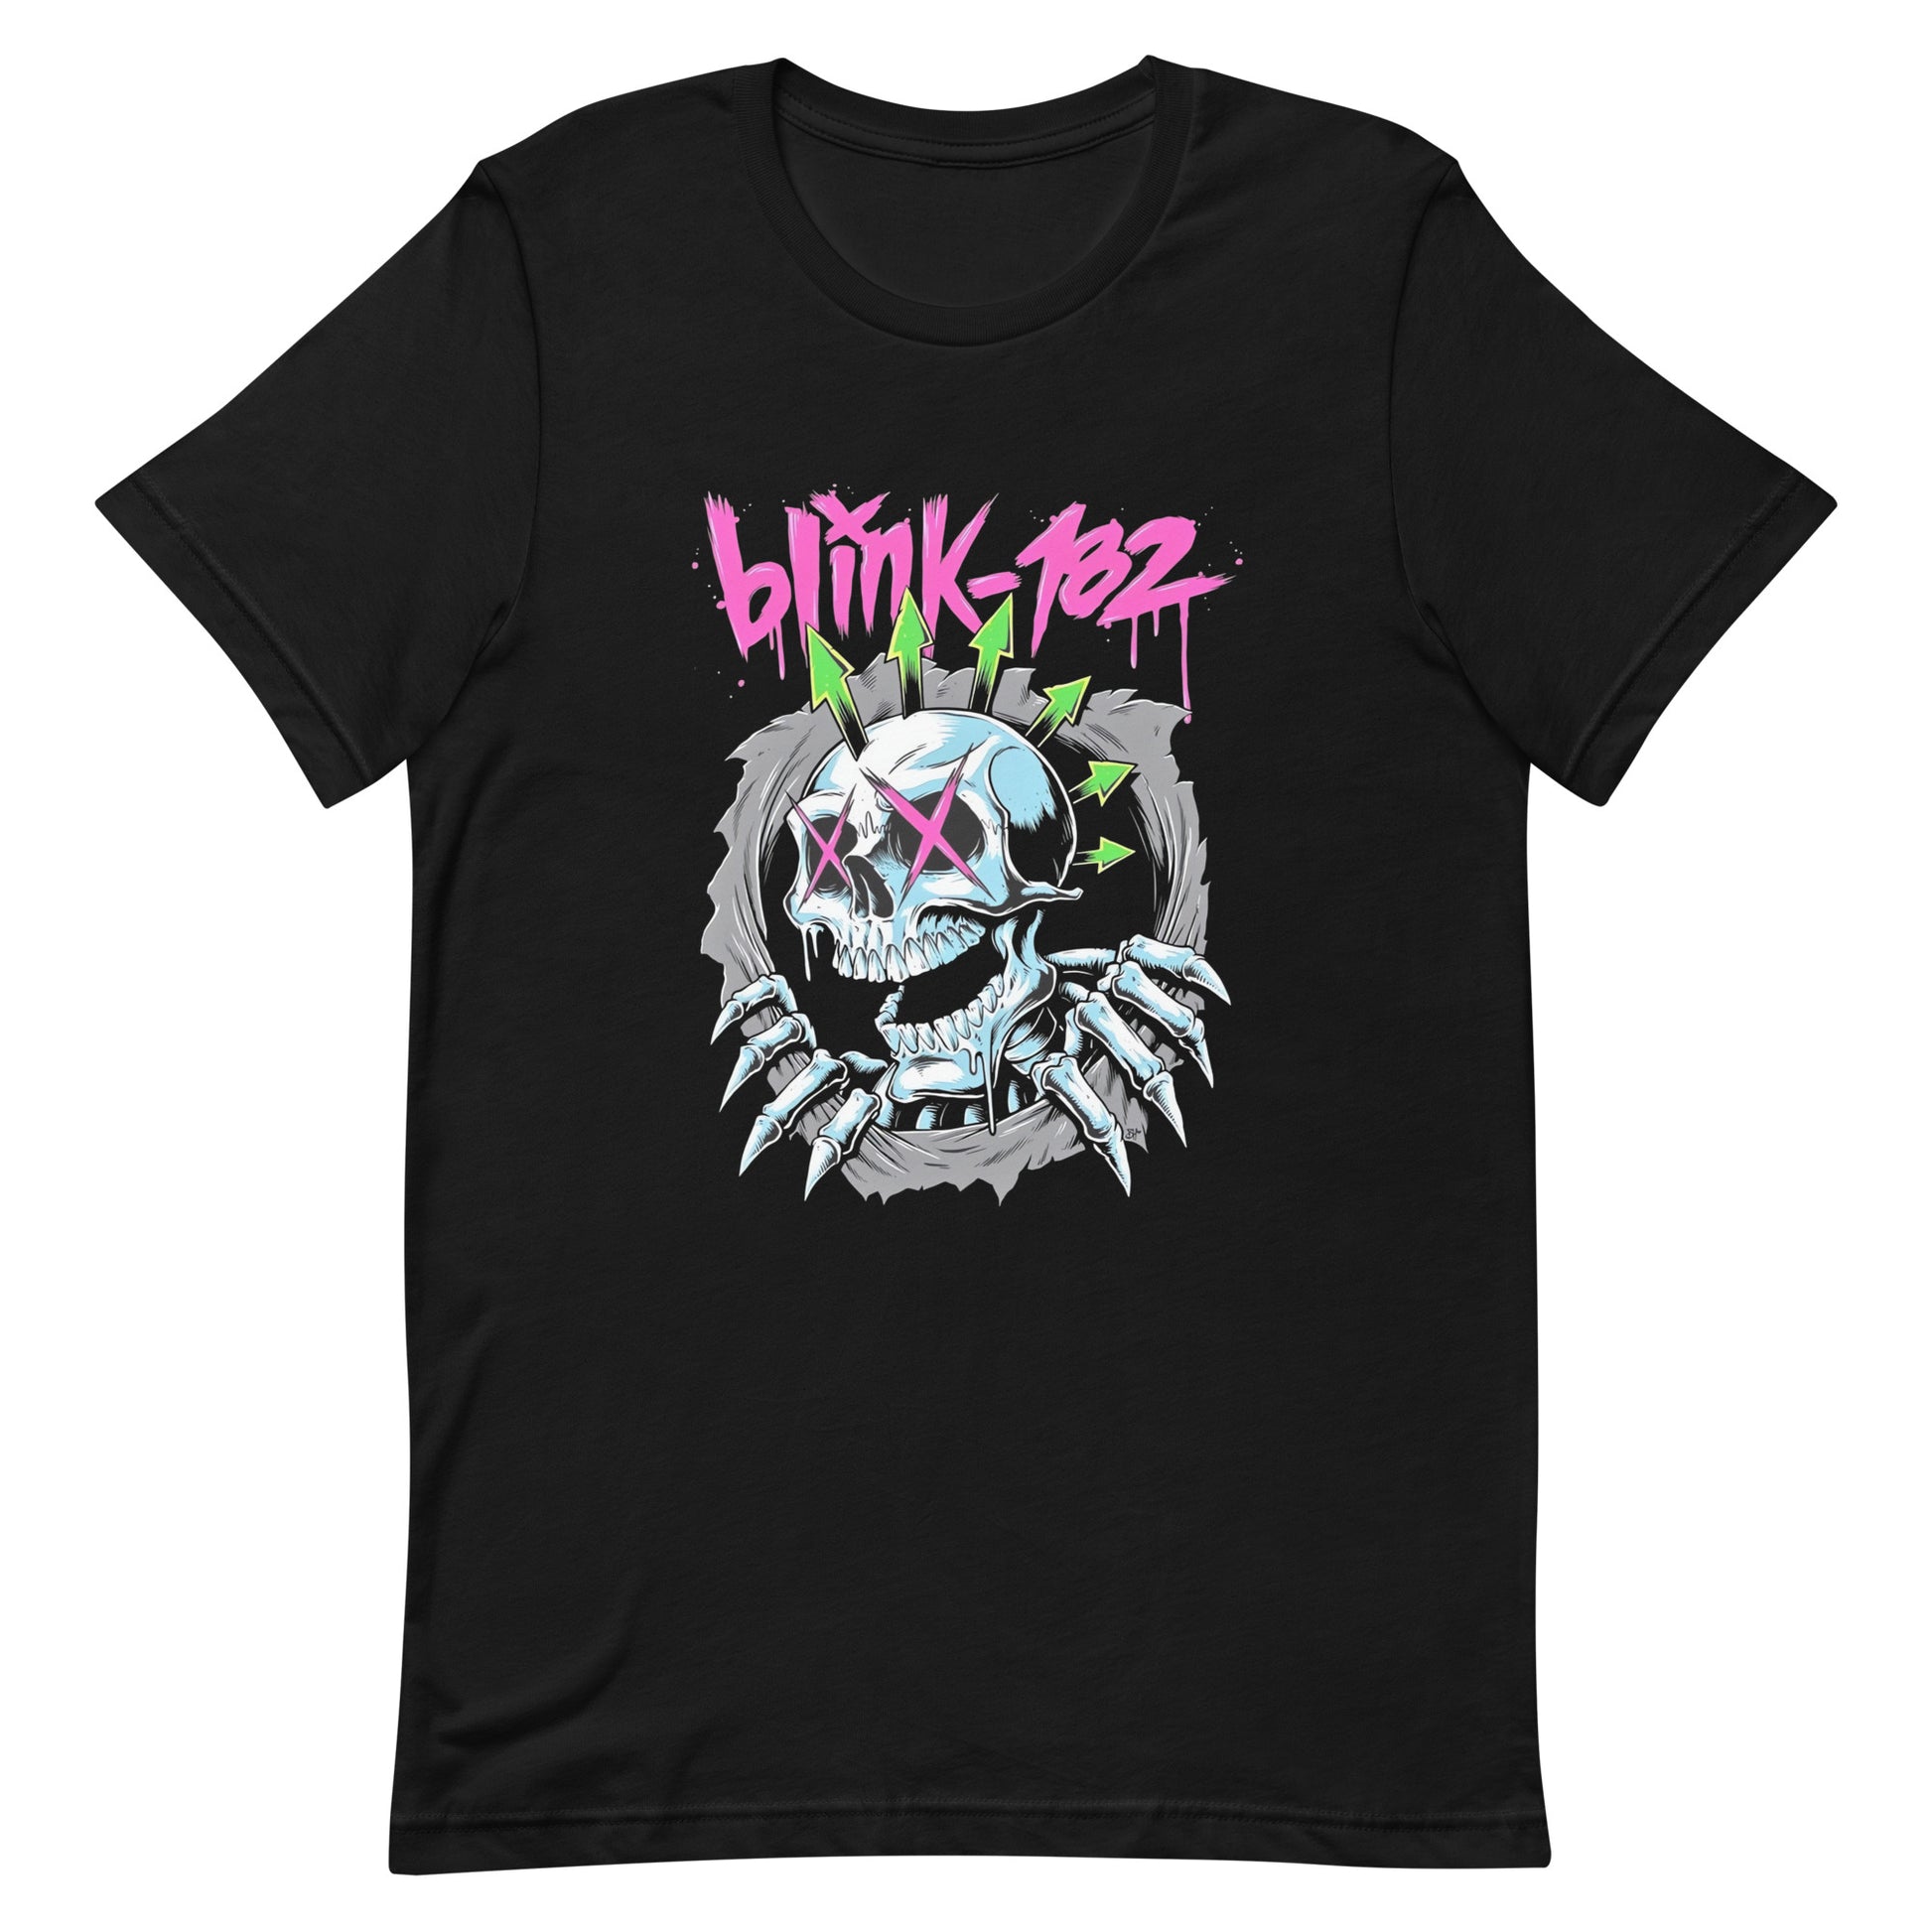 Camiseta Blink 182 Bones, nuestras opciones de playeras son Unisex. disponible en Superstar. Compra y envíos internacionales.